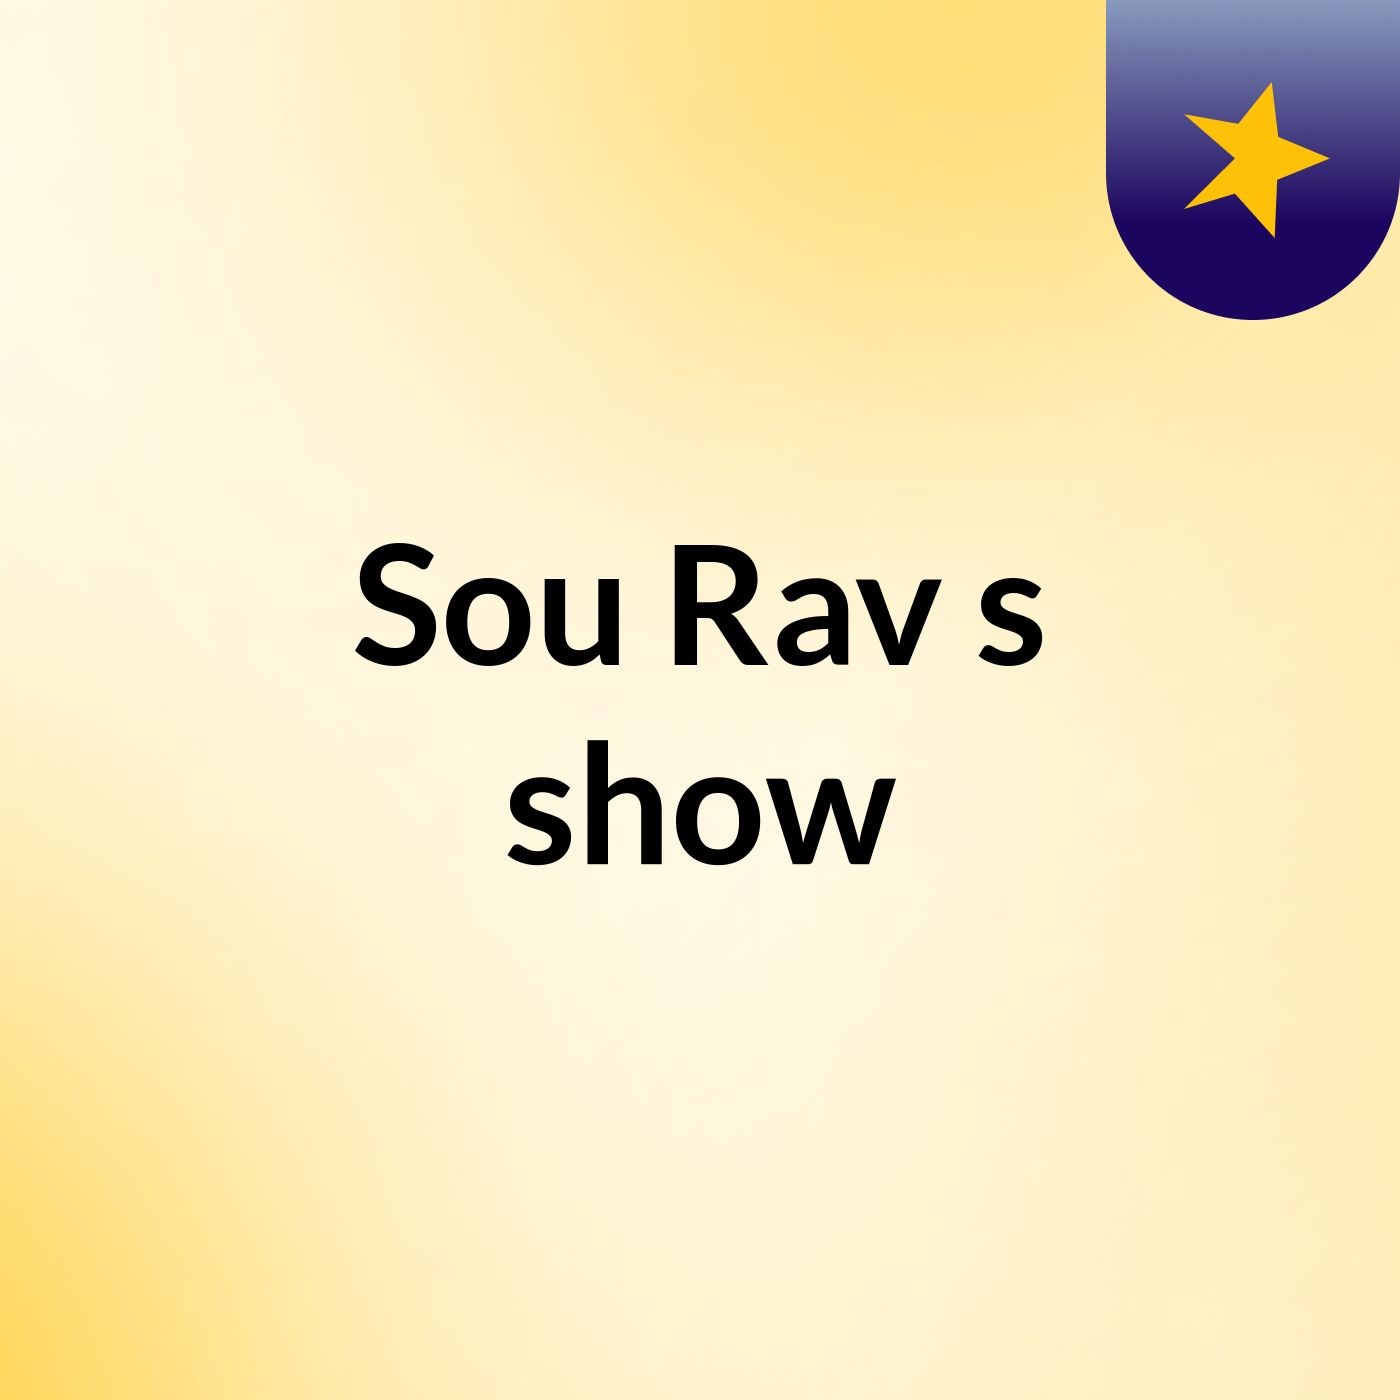 Sou Rav's show